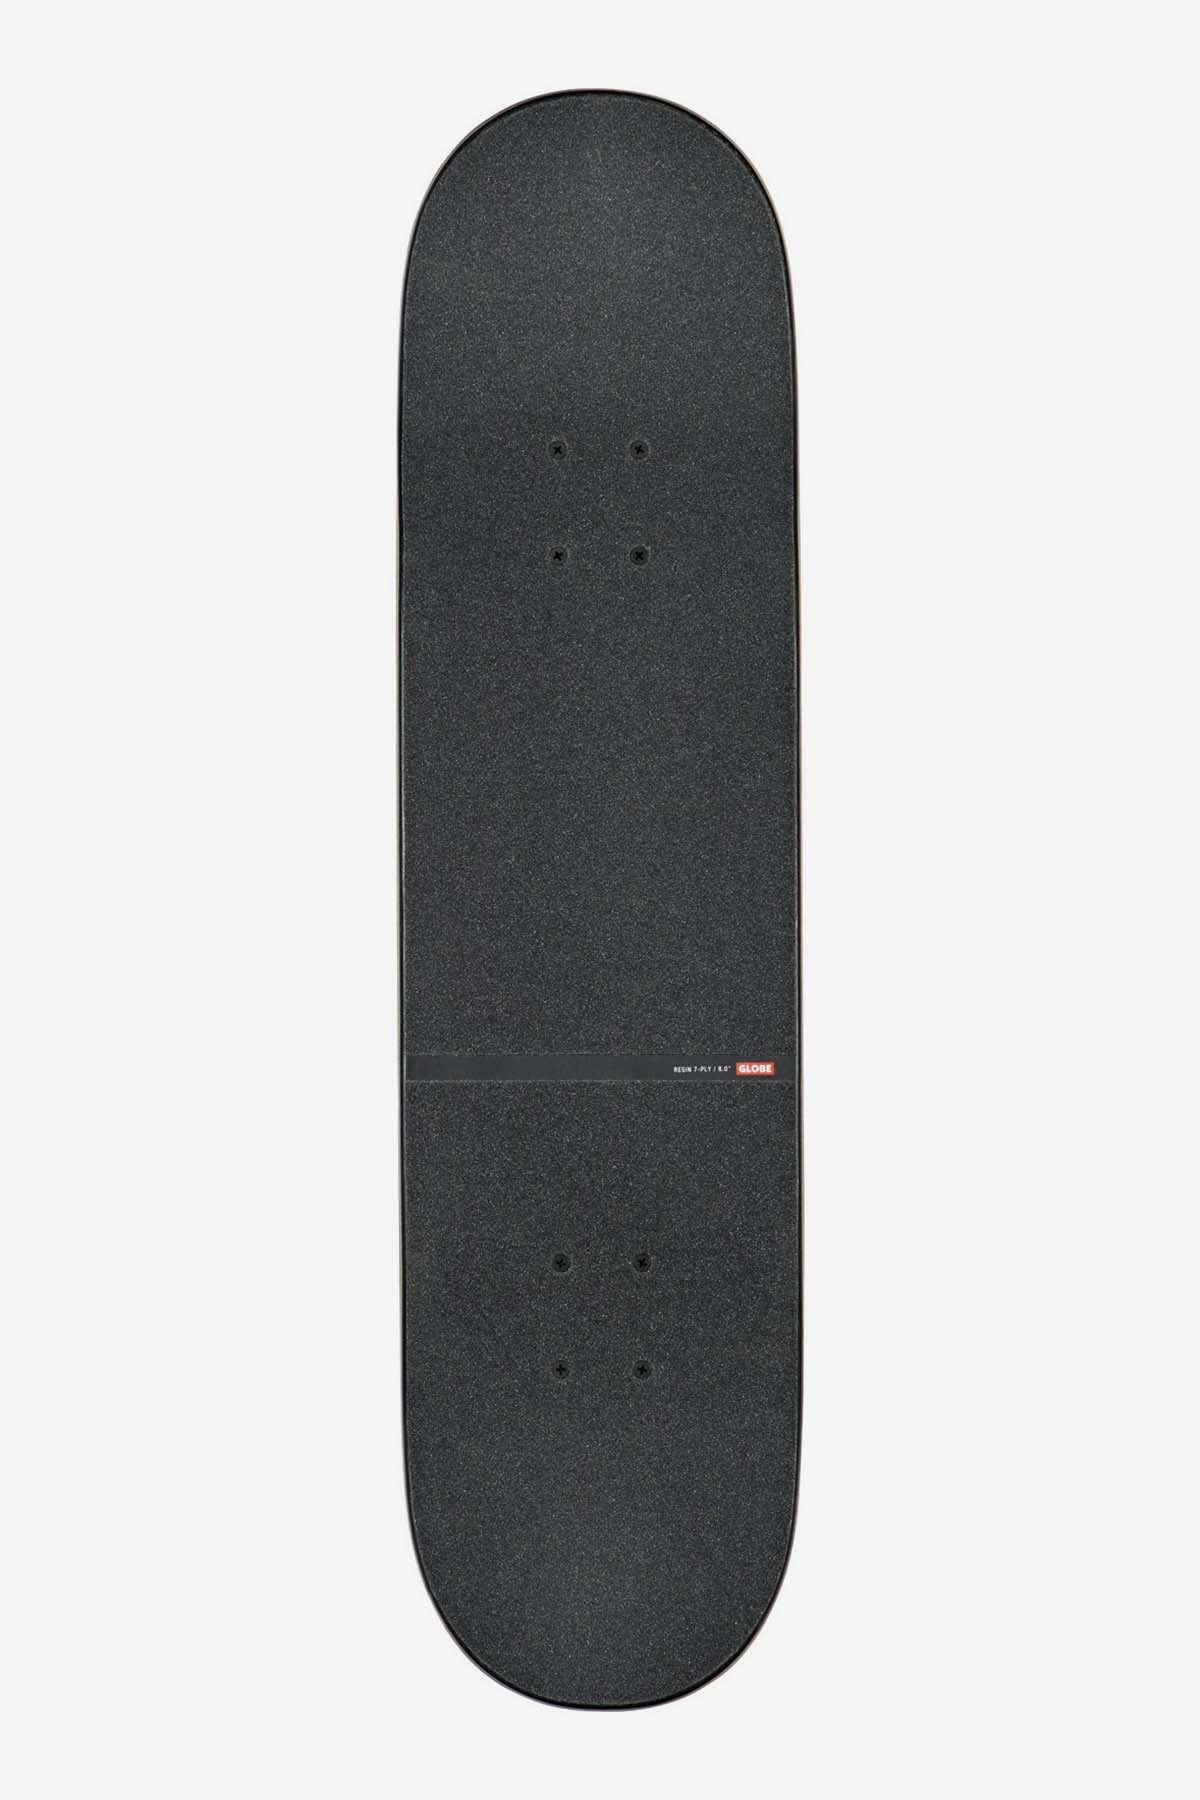 Globe - G1 D Blokken - Zwart/Geel - 8,0" Compleet Skateboard